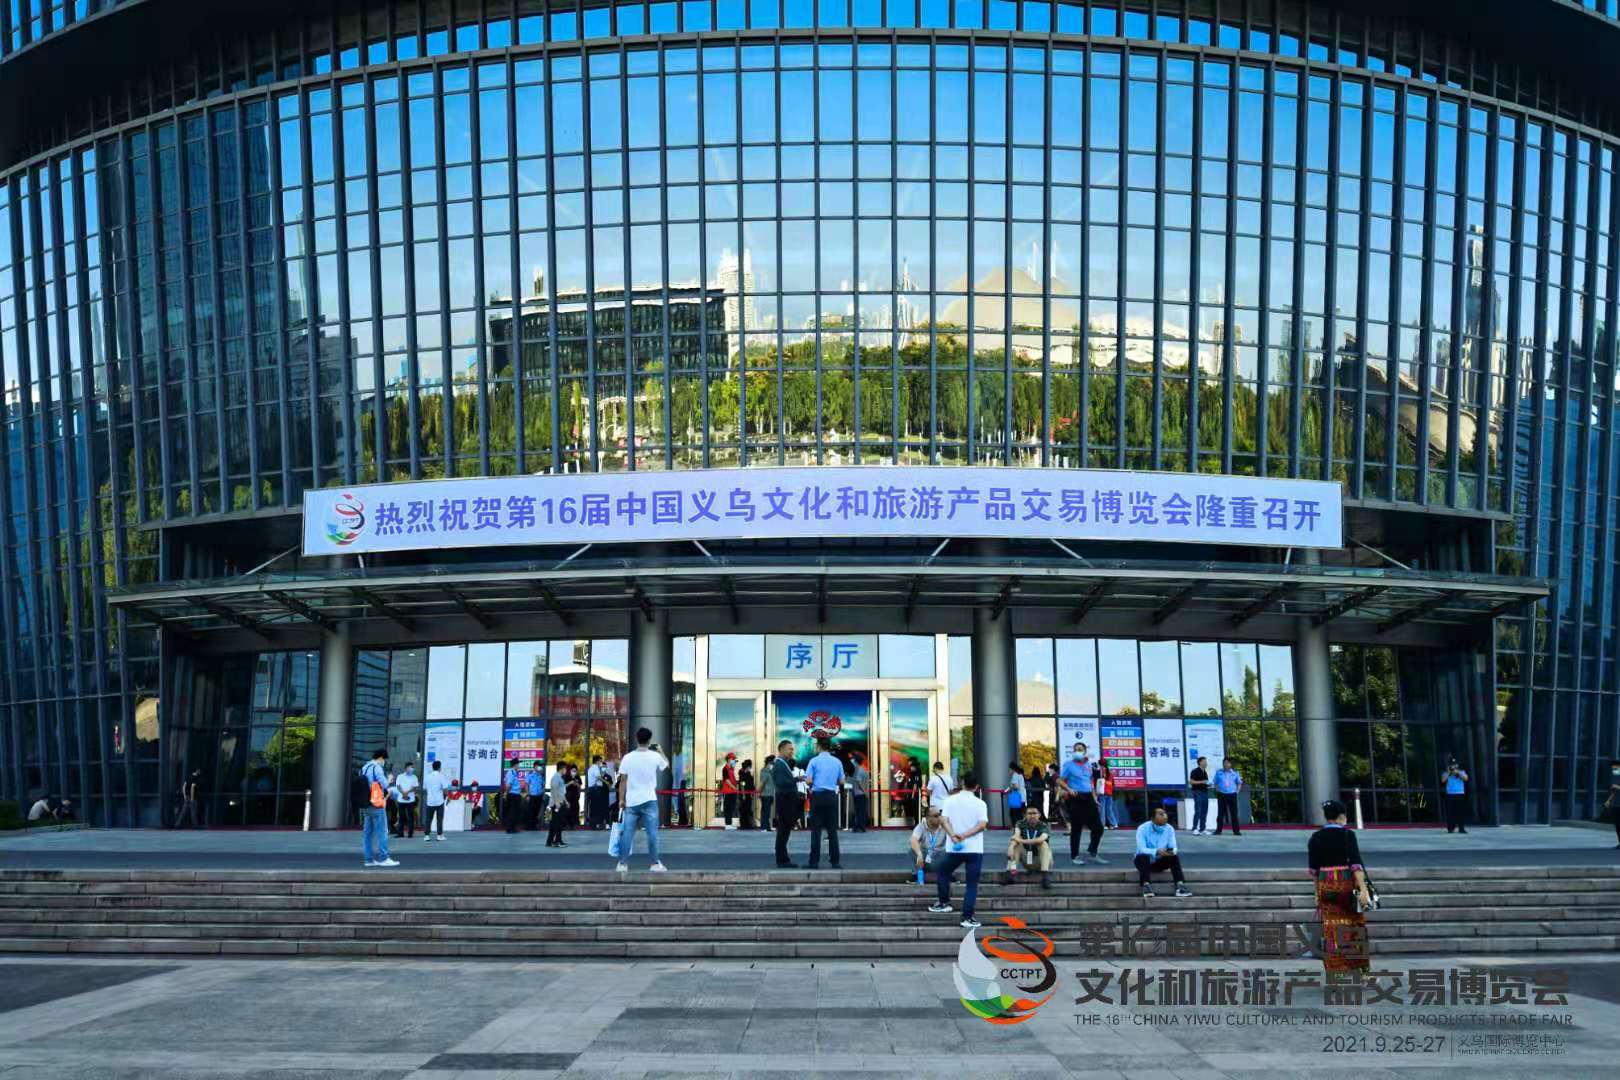 第16届中国义乌文化和旅游产品交易博览会隆重开幕